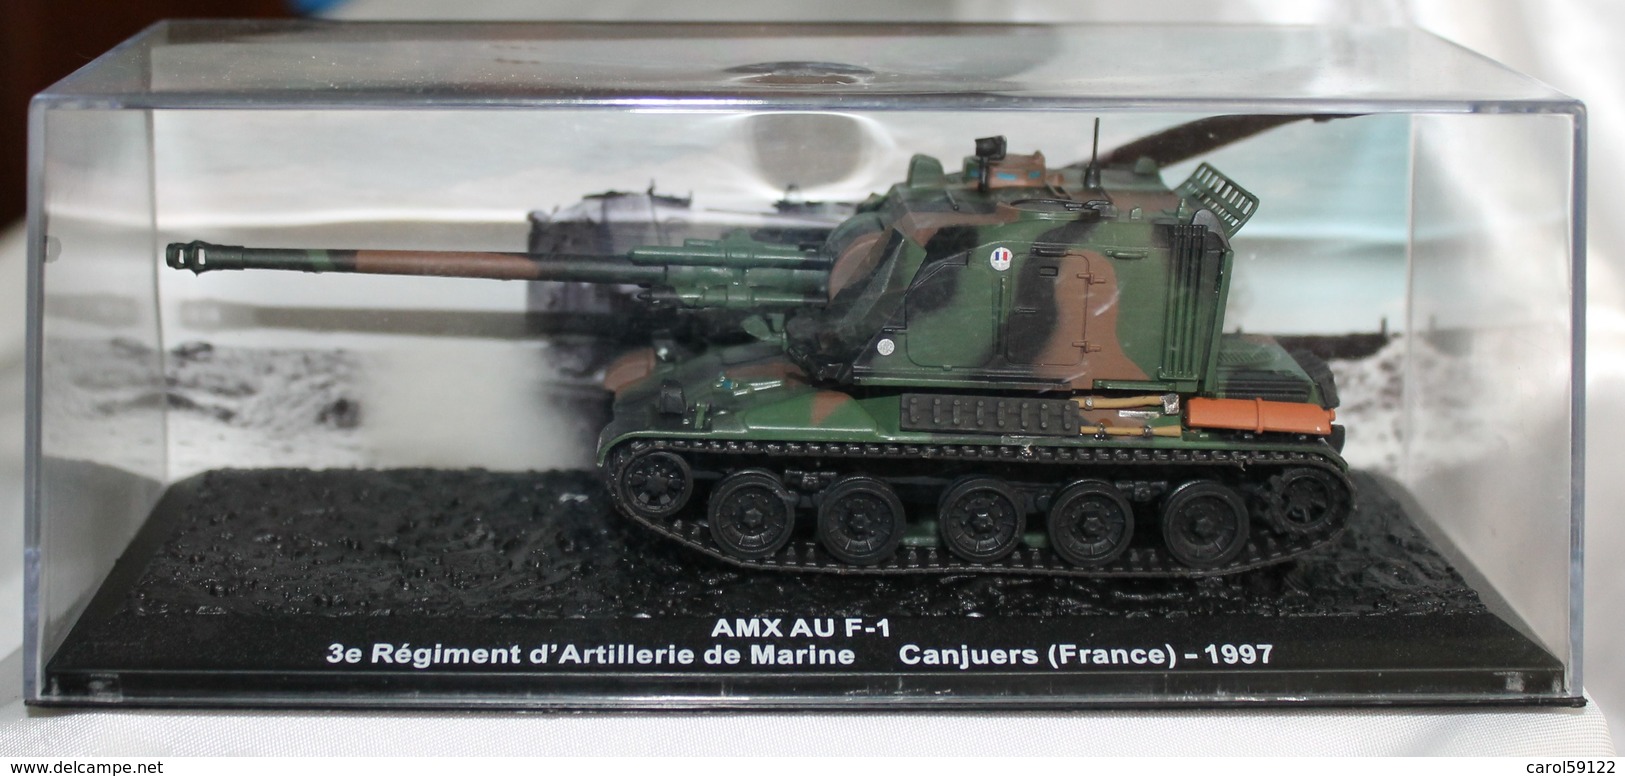 Maquette AMX AU F-1 1997 - Voertuigen